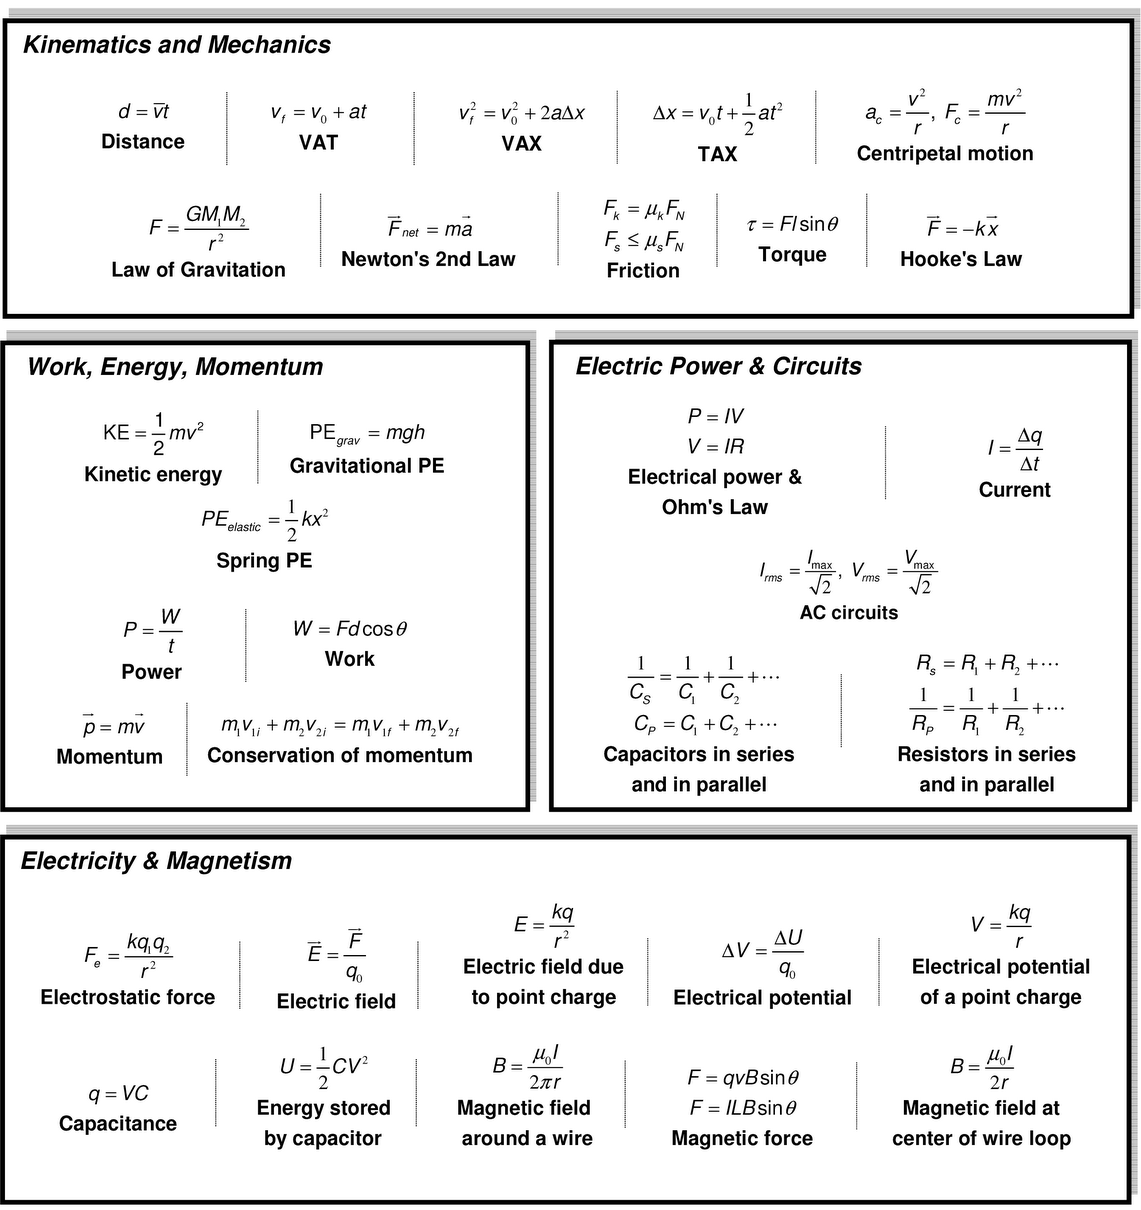 Physics Formula Chart